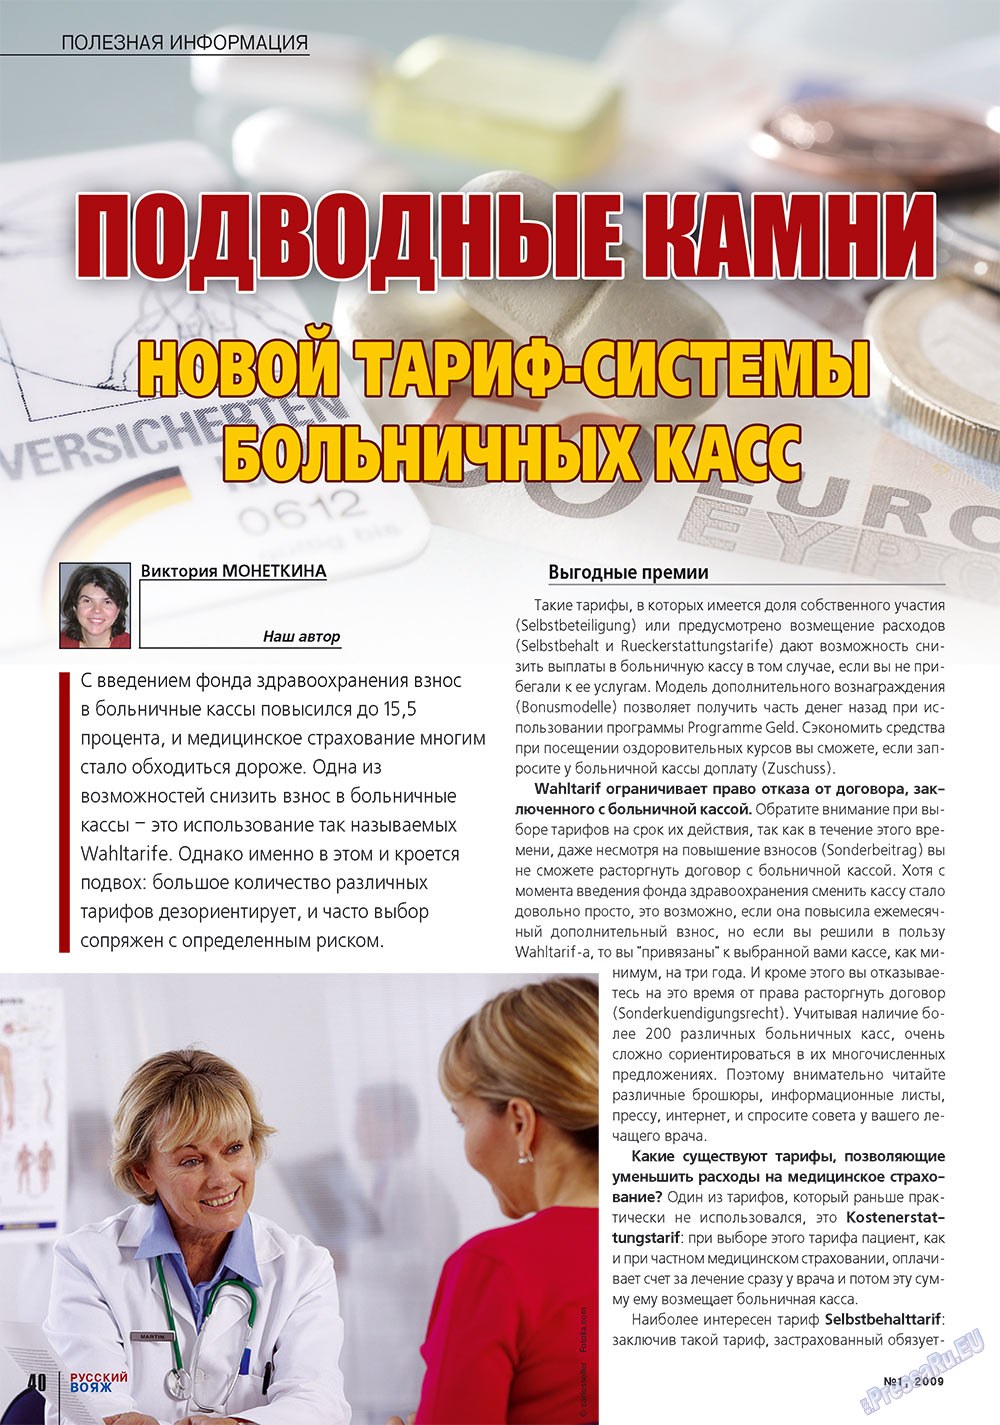 Русский вояж (журнал). 2009 год, номер 1, стр. 40